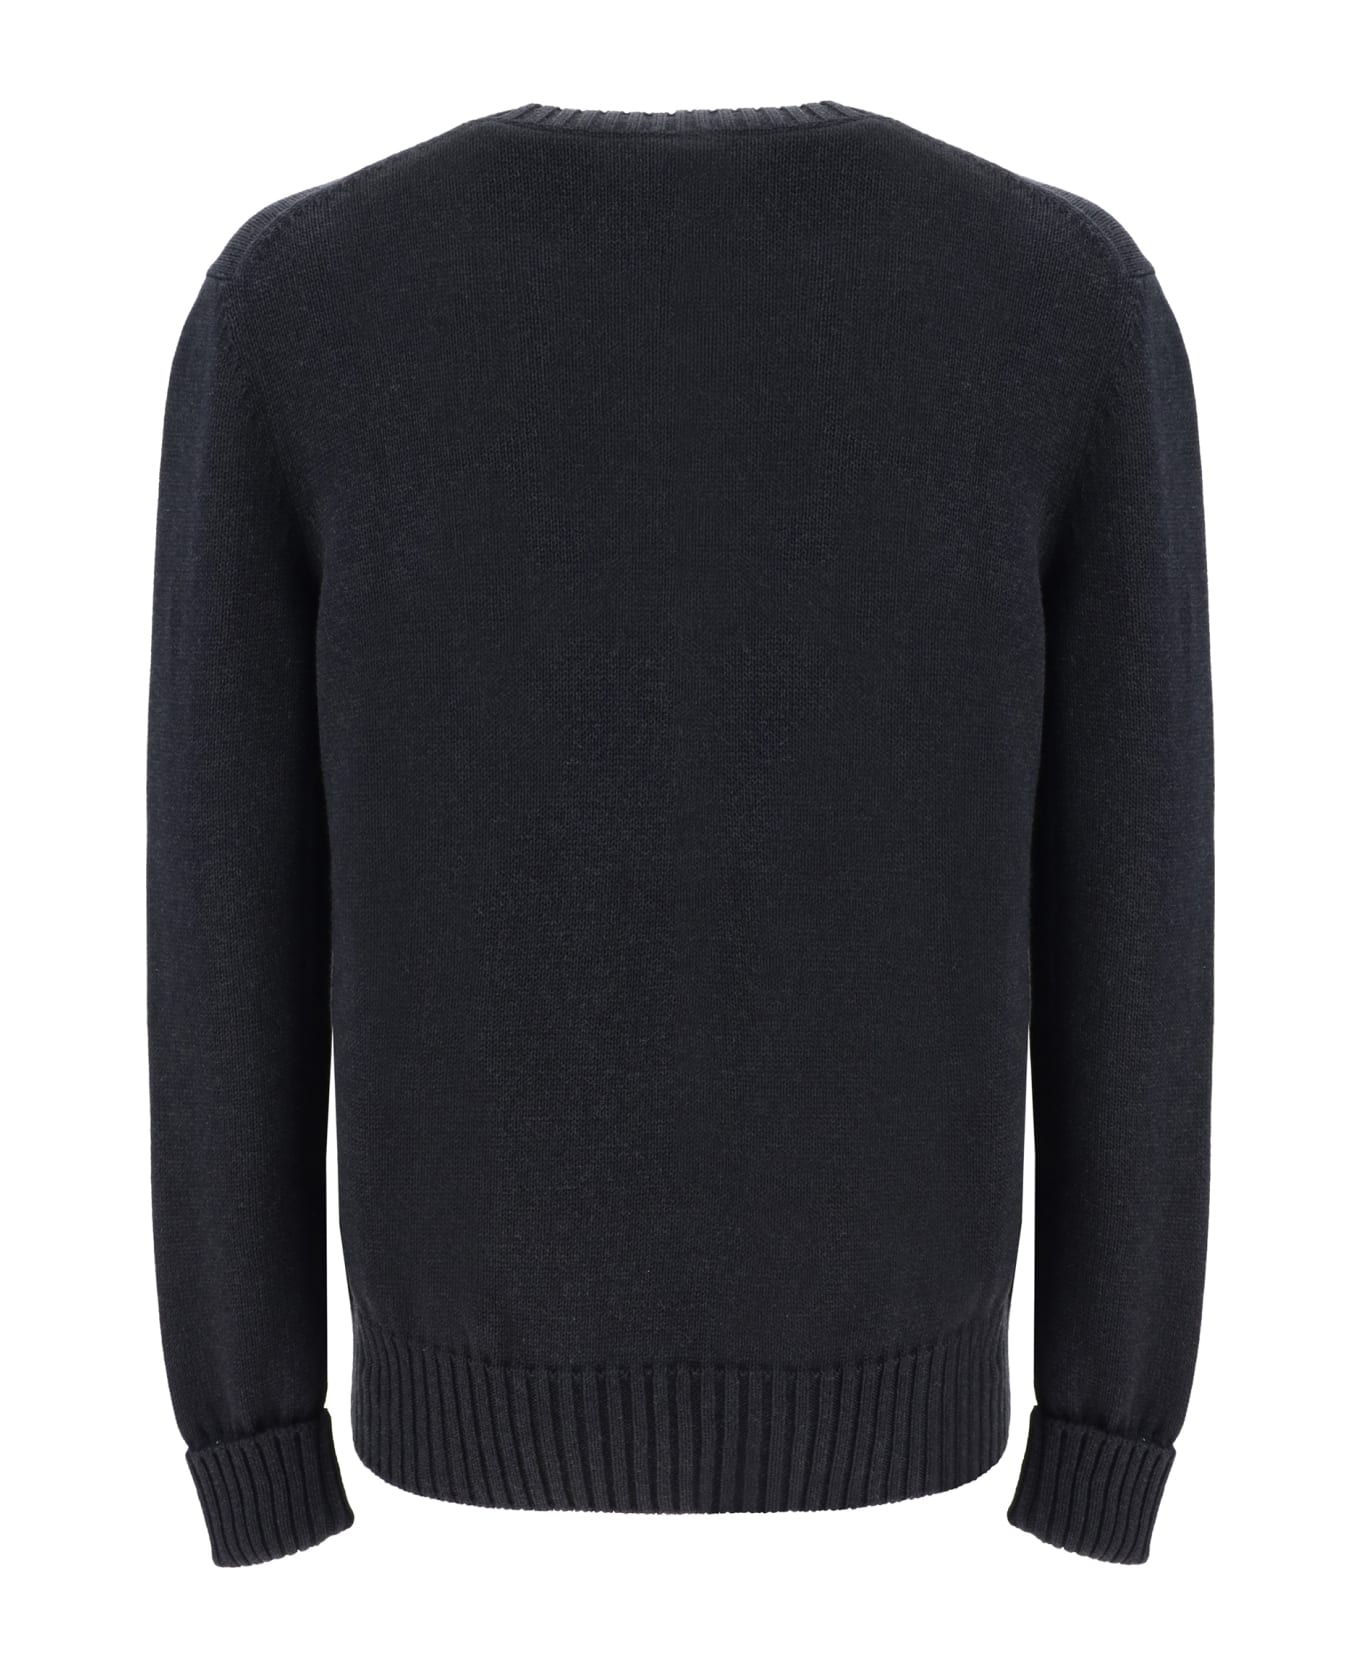 Alexander McQueen Sweater - Charcoal/steel